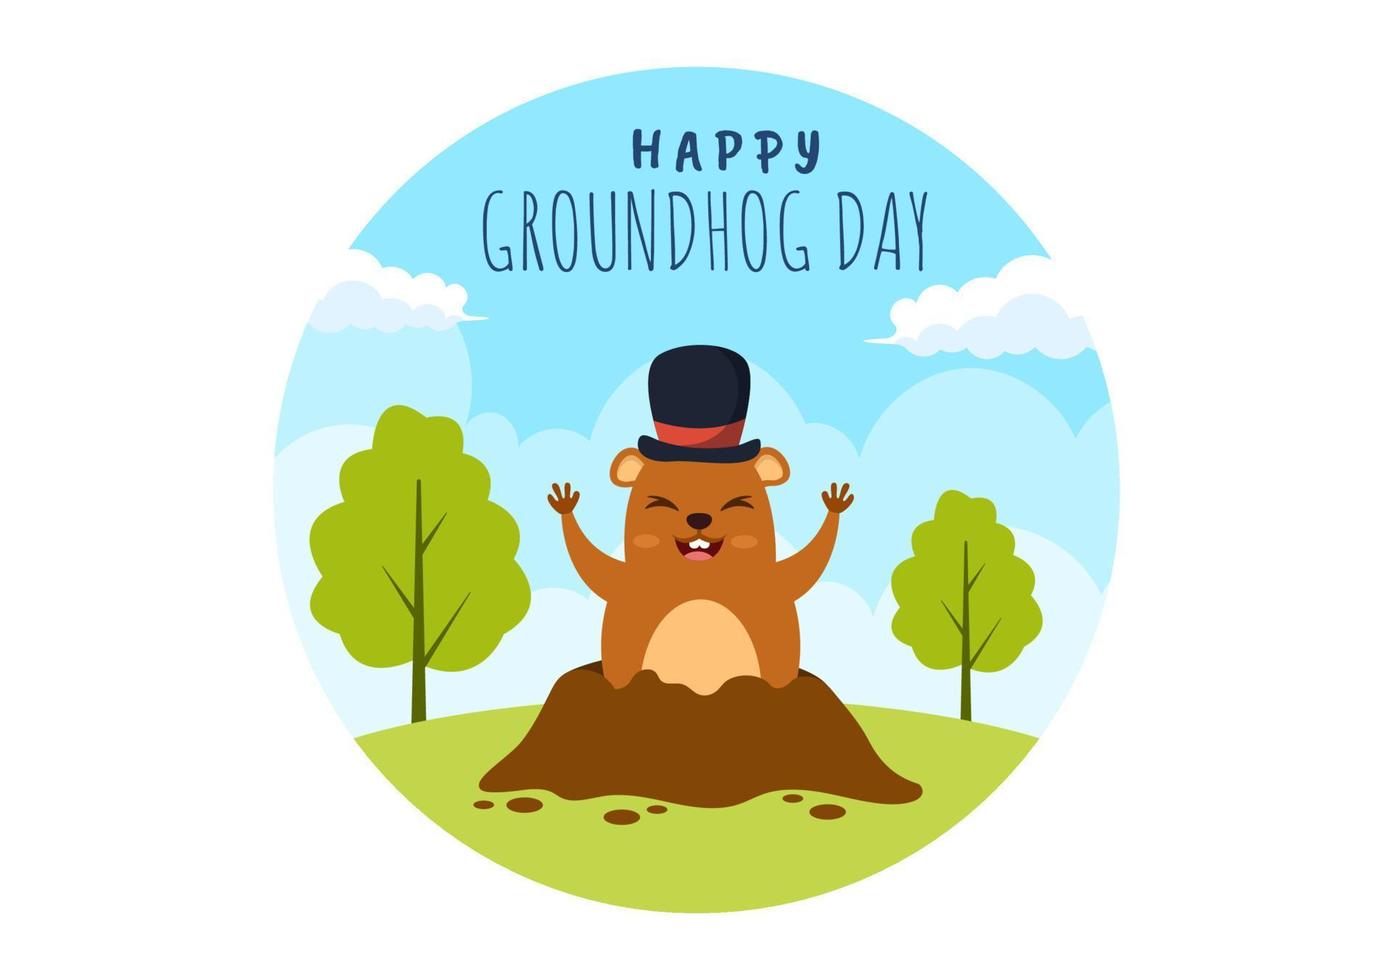 feliz día de la marmota el 2 de febrero con lindo personaje de marmota y plantilla de fondo de jardín ilustración plana de dibujos animados dibujados a mano vector